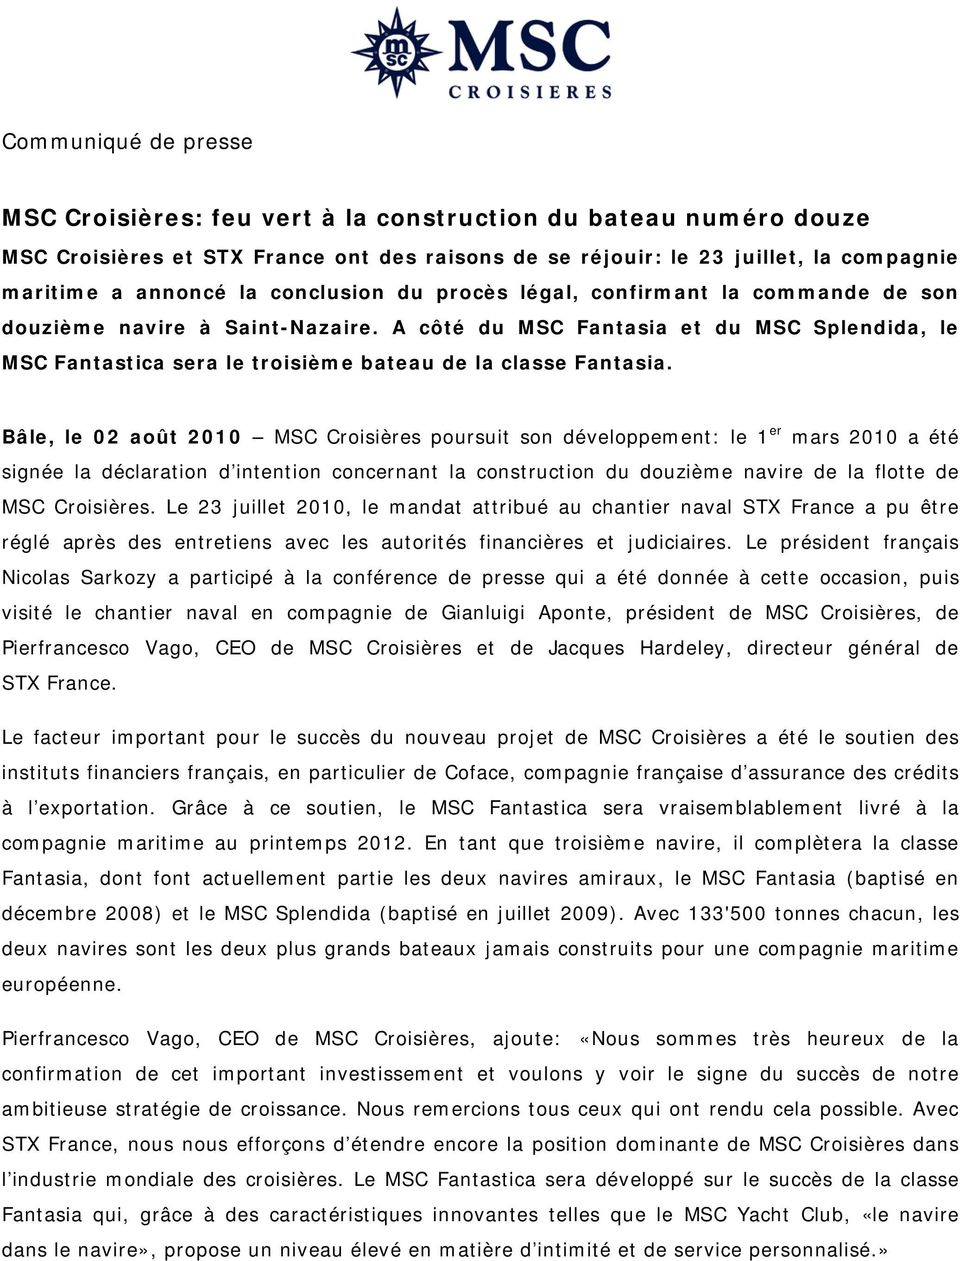 Bâle, le 02 août 2010 MSC Croisières poursuit son développement: le 1 er mars 2010 a été signée la déclaration d intention concernant la construction du douzième navire de la flotte de MSC Croisières.